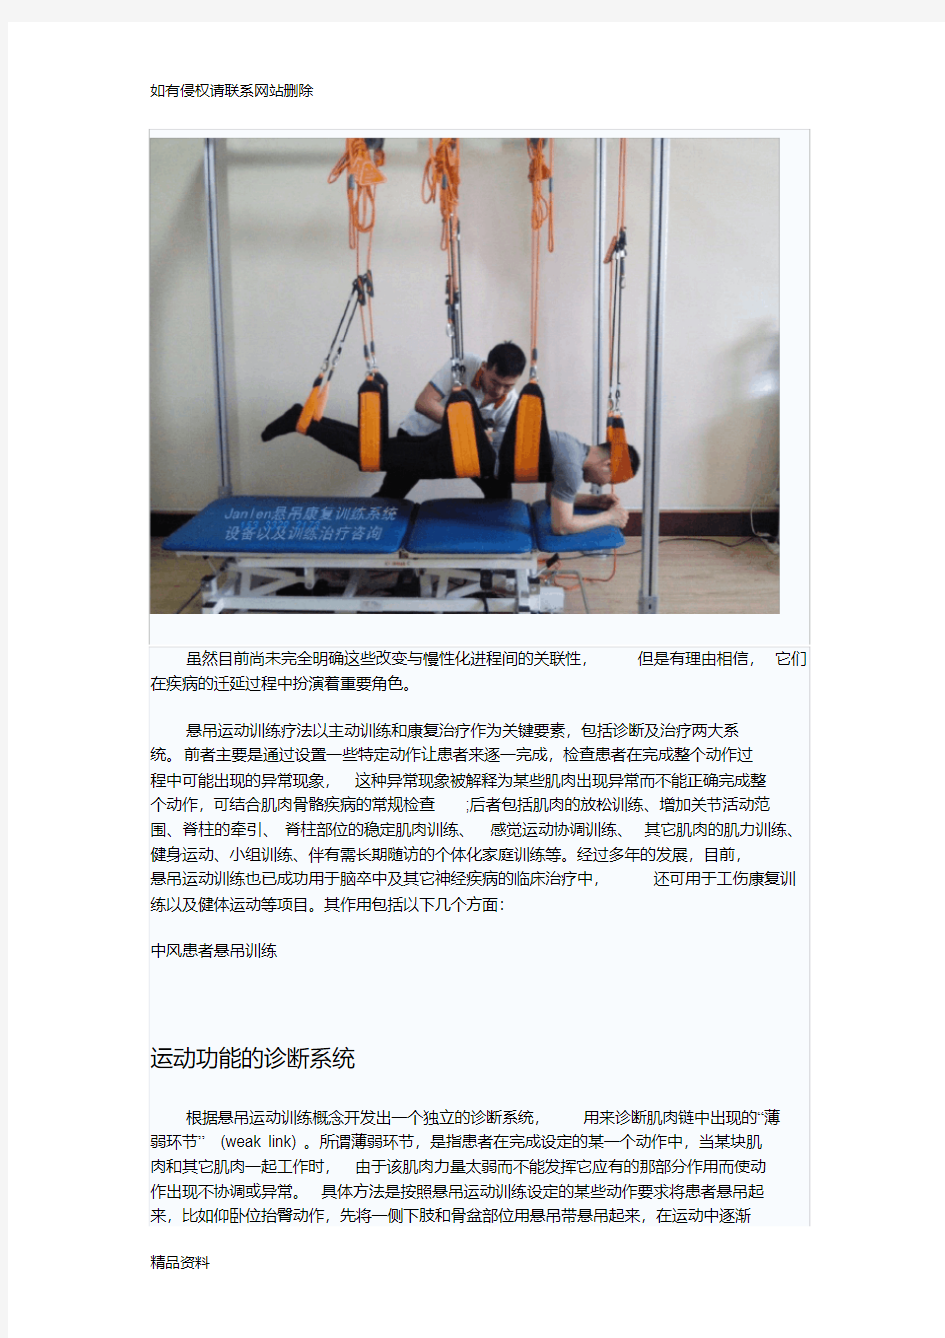 悬吊康复及悬吊运动训练讲课教案